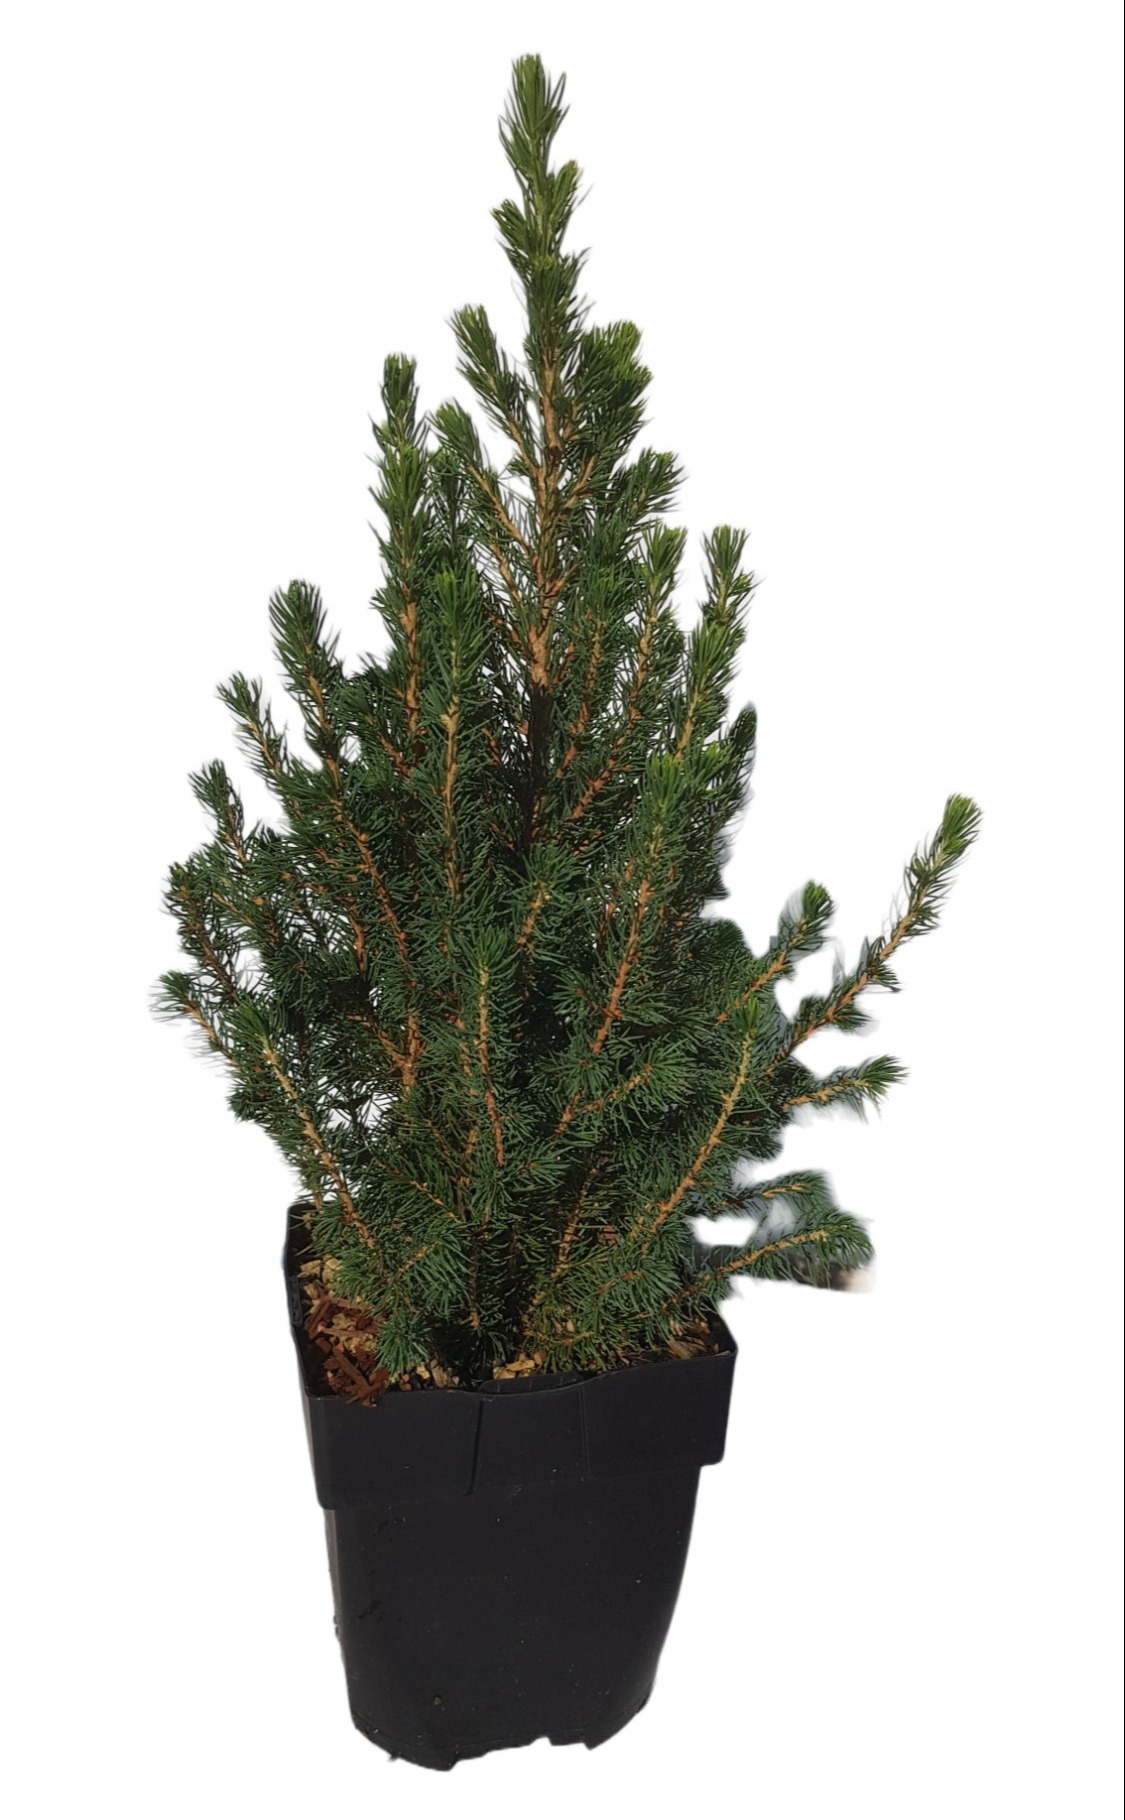 Picture of Picea glauca 'Conica' P17